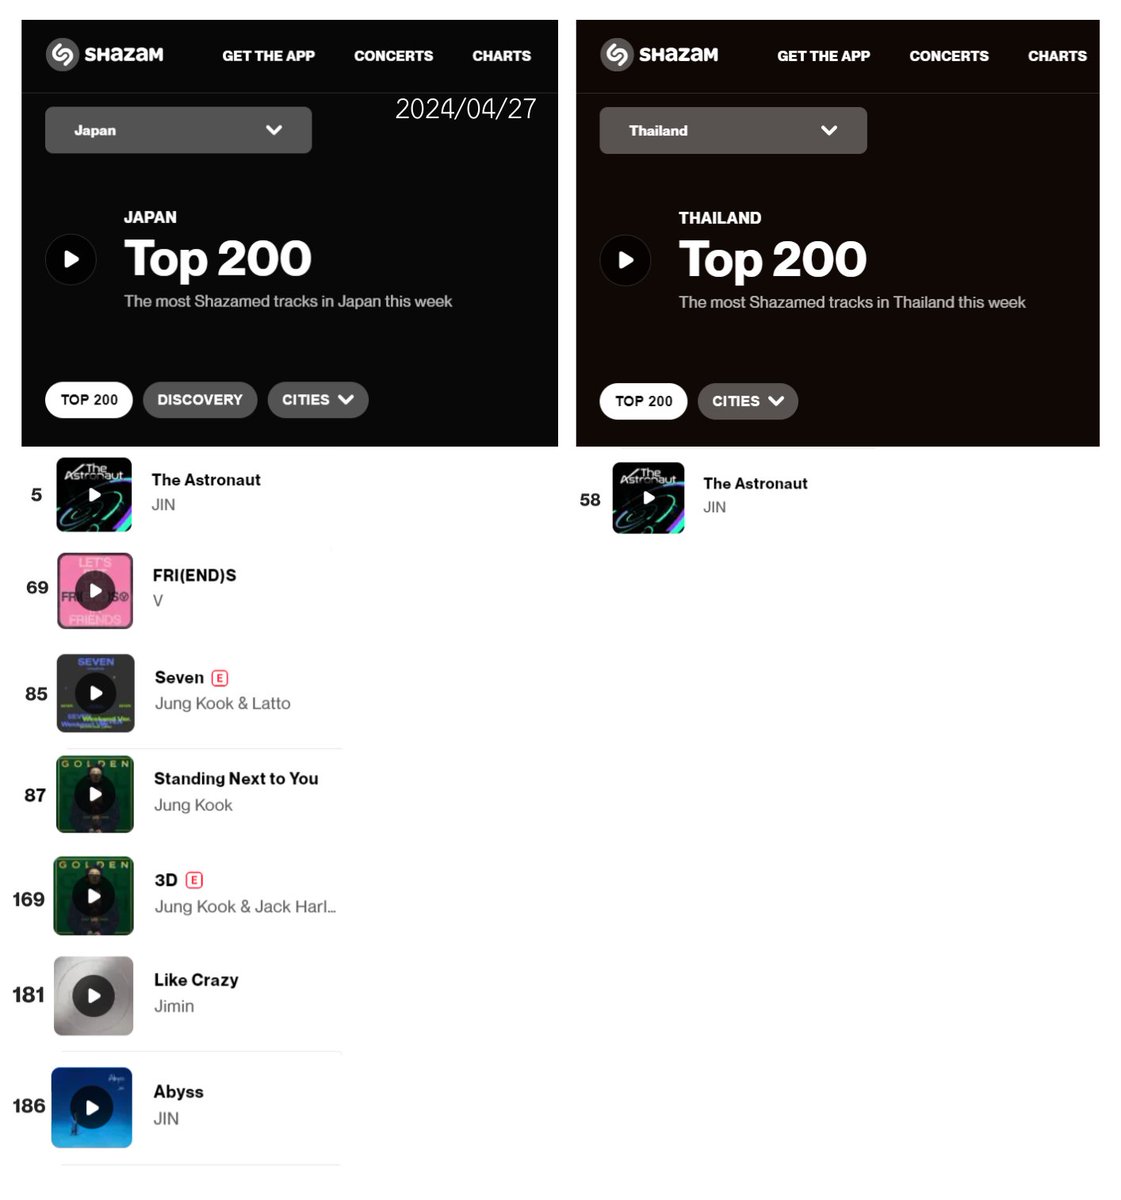 [📈] #JIN on Shazam Top 200 Charts [2024/04/27] 🌀 #TheAstronaut #5. 🇯🇵 Japan (-1) #58. 🇹🇭 Thailand (-28) Abyss #186. 🇯🇵 Japan (RE) #BTSJIN #SEOKJIN #방탄소년단진 #진 @BTS_twt